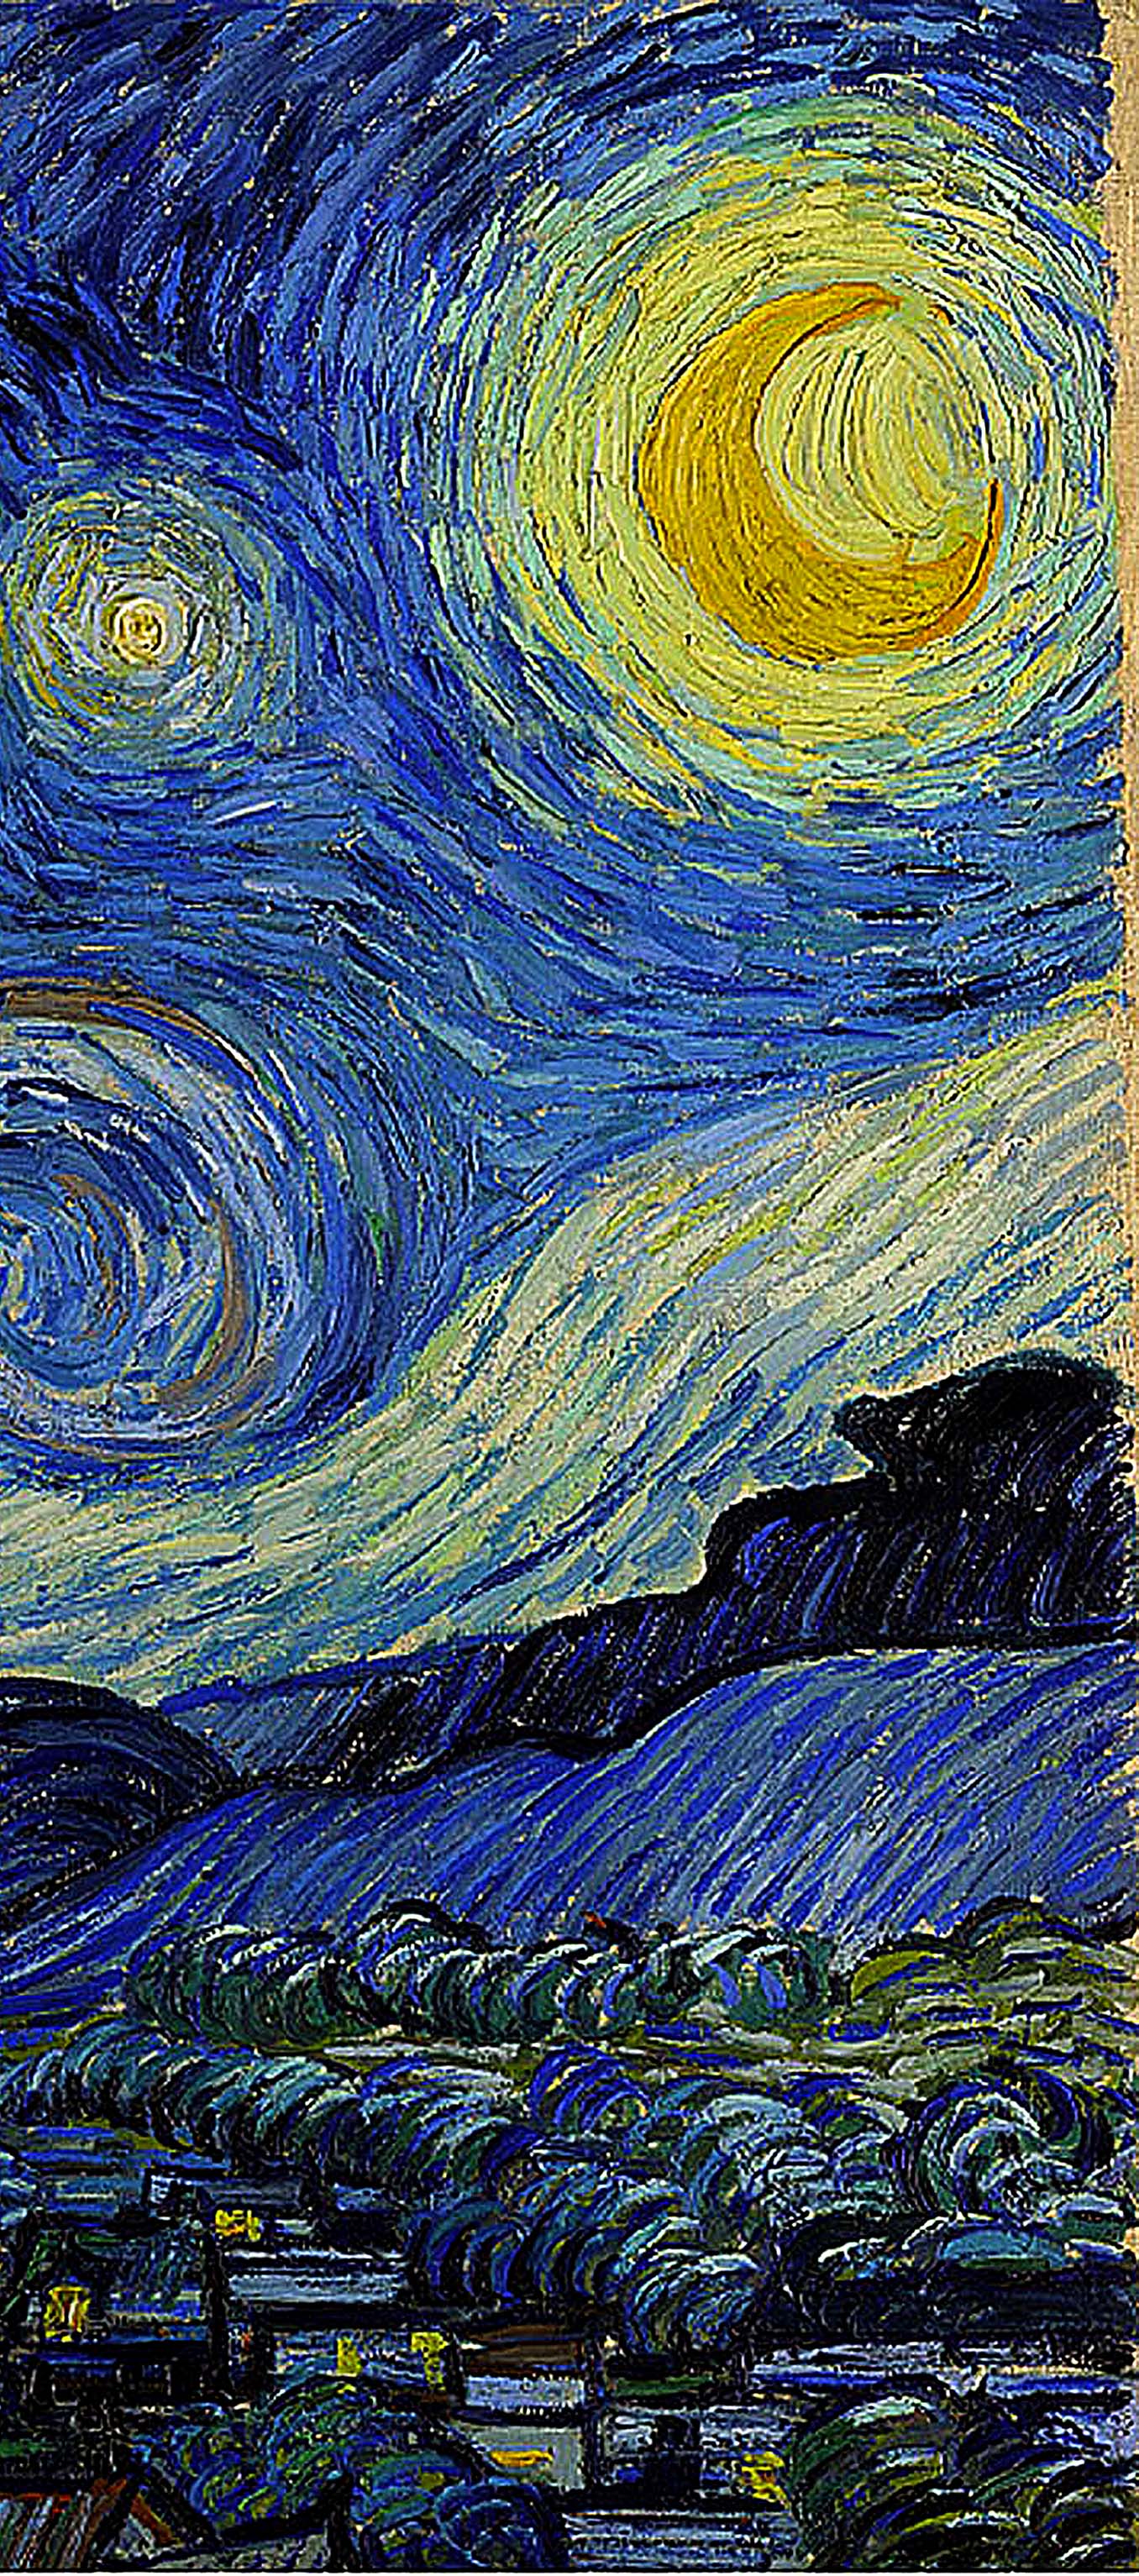 Van Gogh Starry Night Wallpapers - Top Free Van Gogh Starry Night